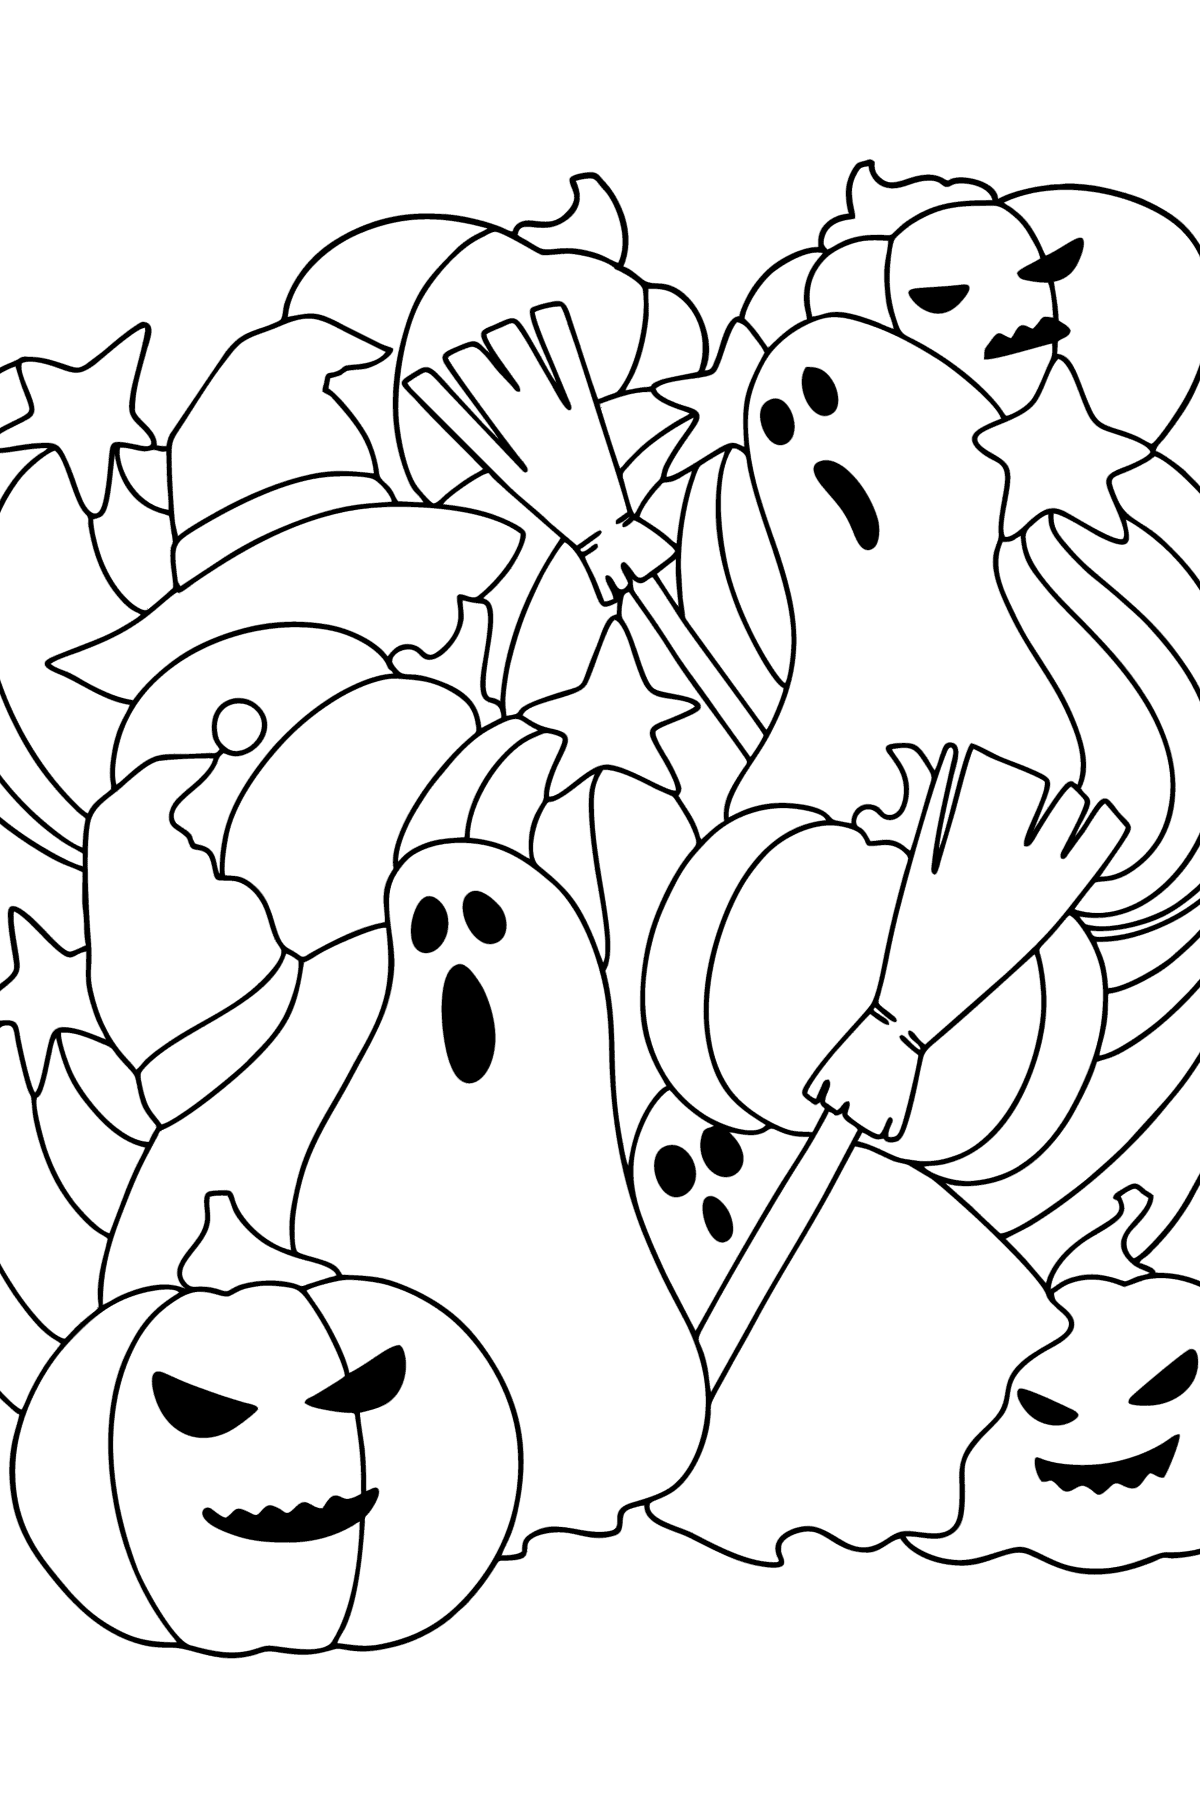 Desenho para colorir de Doodle de Halloween - Imagens para Colorir para Crianças